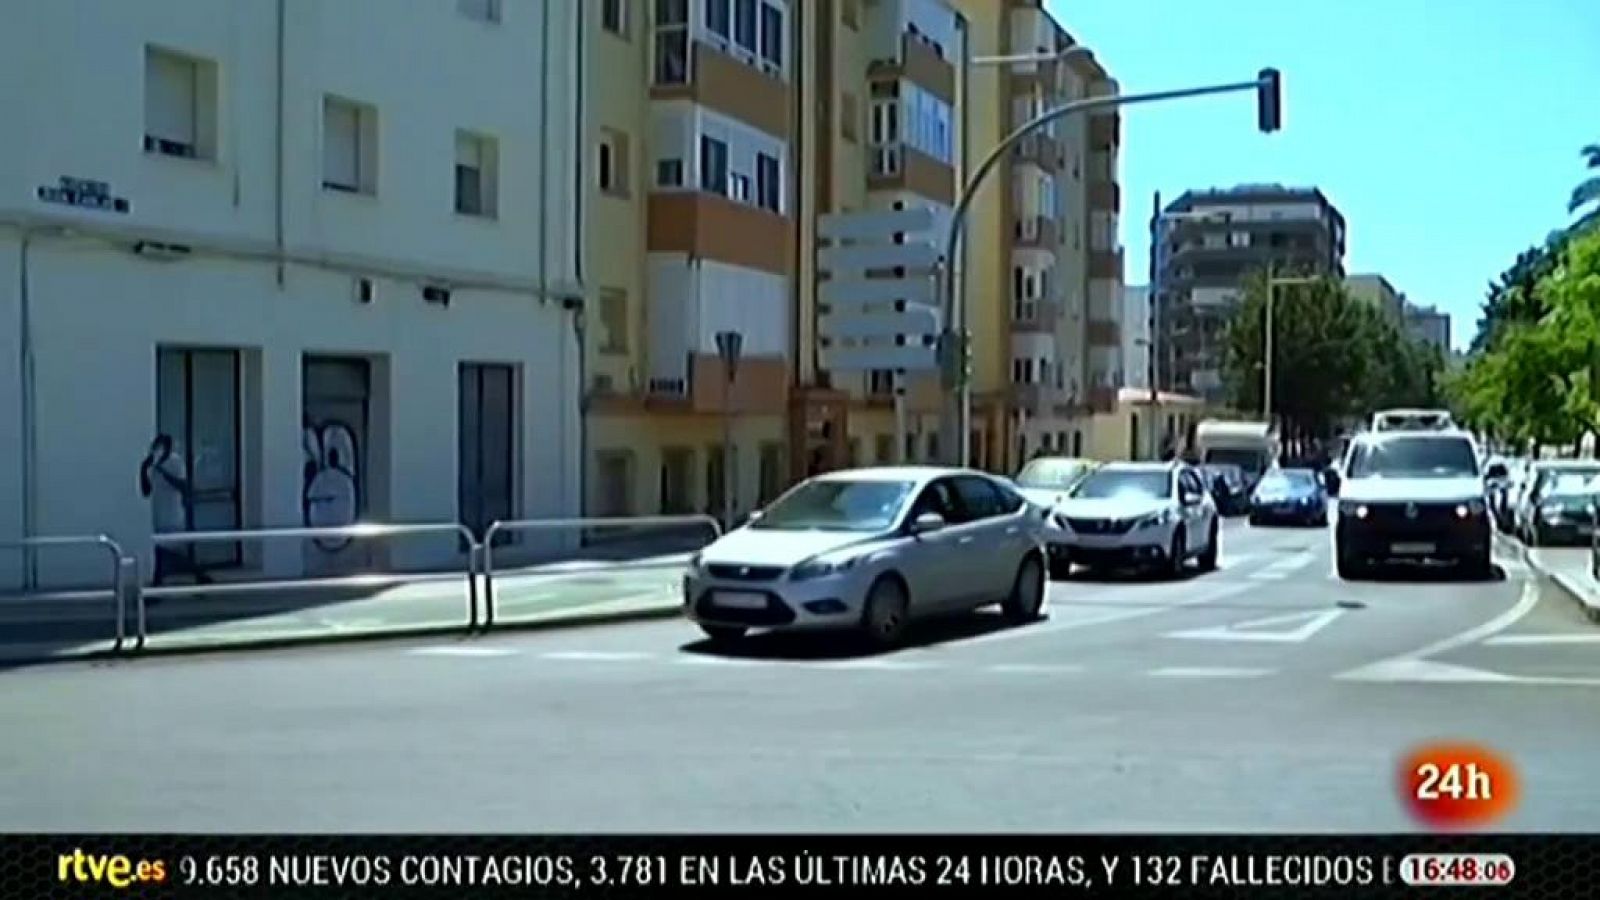 La avenida Juan Carlos I de Cádiz pasará a llamarse avenida de Sanidad Pública